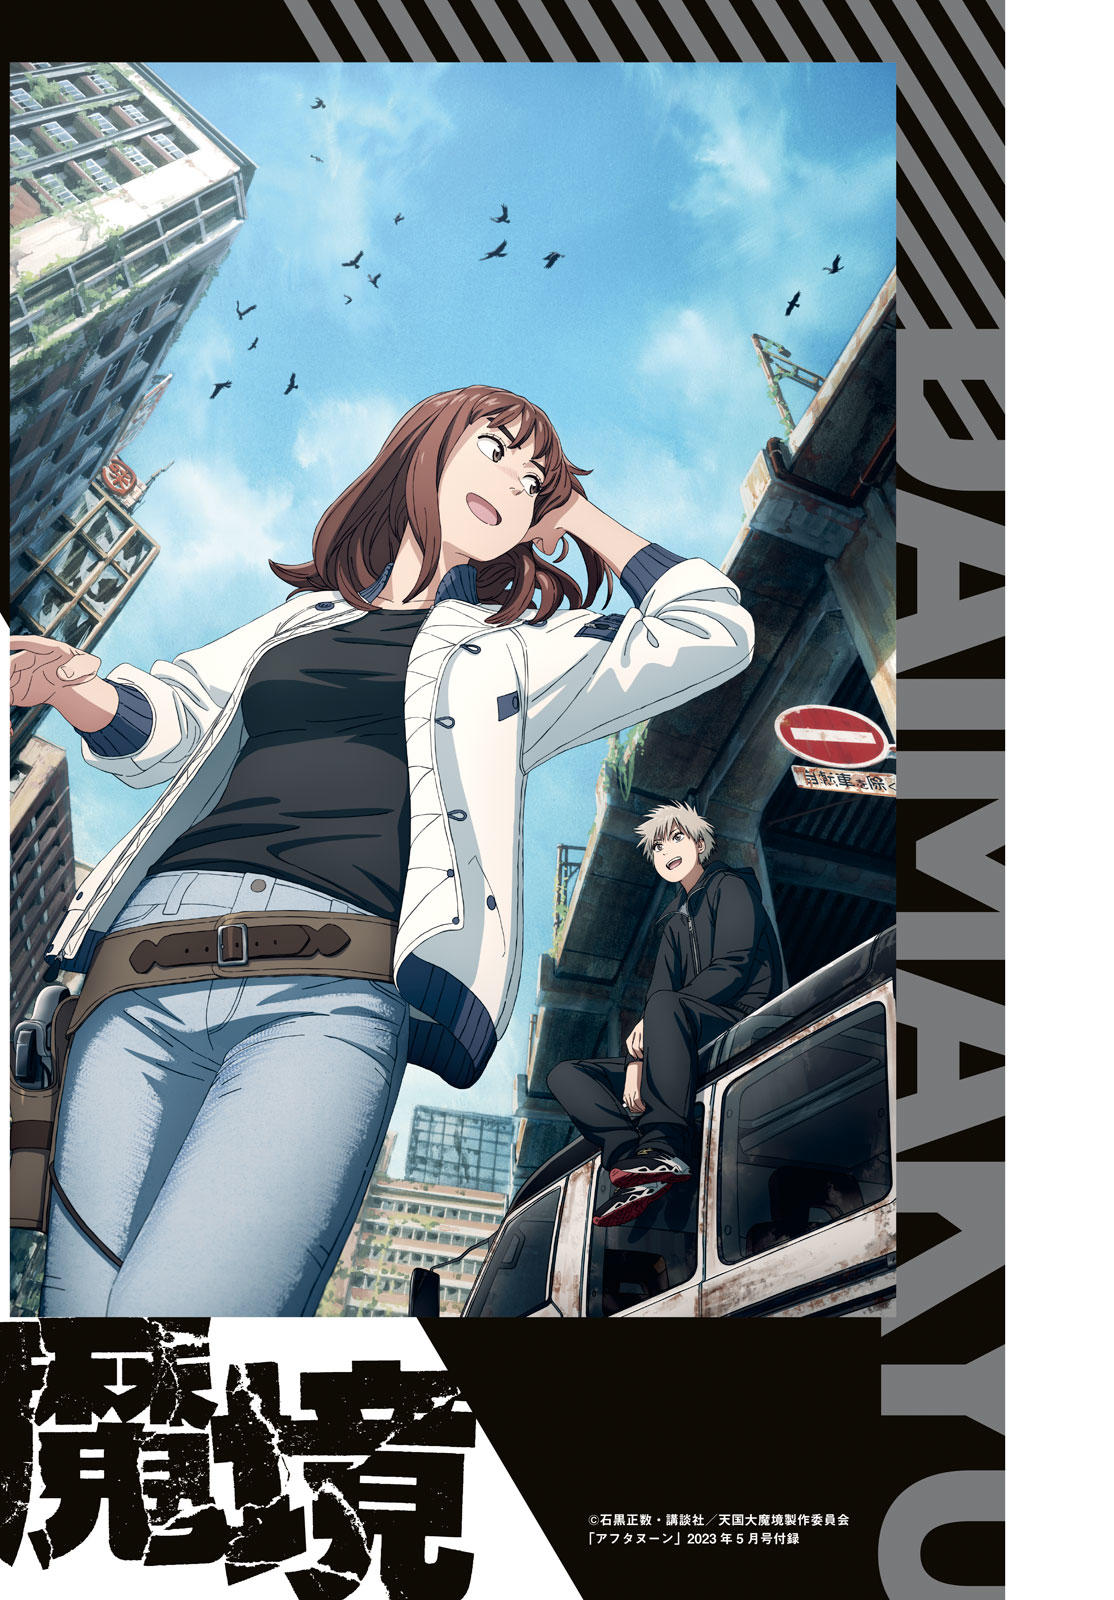 Tengoku Daimakyou Ch. 28 Walled City ➃ - Novel Cool - Best online light  novel reading website